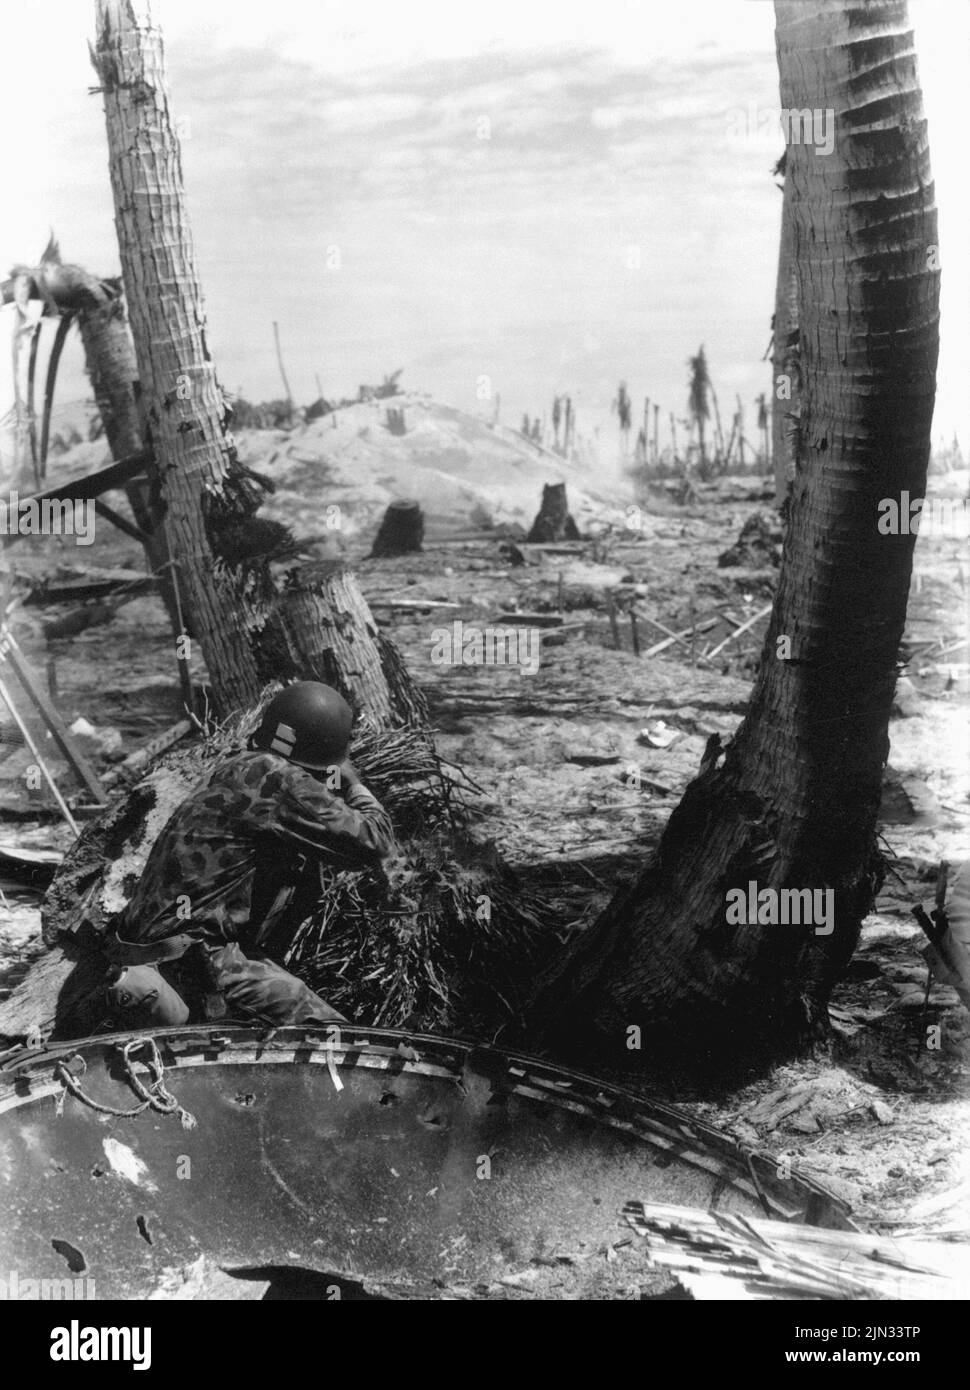 Un marino estadounidense disparando sobre una caja de picota japonesa desde detrás de un árbol destrozado durante la Batalla de Tarawa. Los desembarques en Tarawa fueron parte de la ofensiva estadounidense contra las islas del Pacífico en poder de Japón antes de prepararse para un ataque contra el continente japonés. Foto de stock